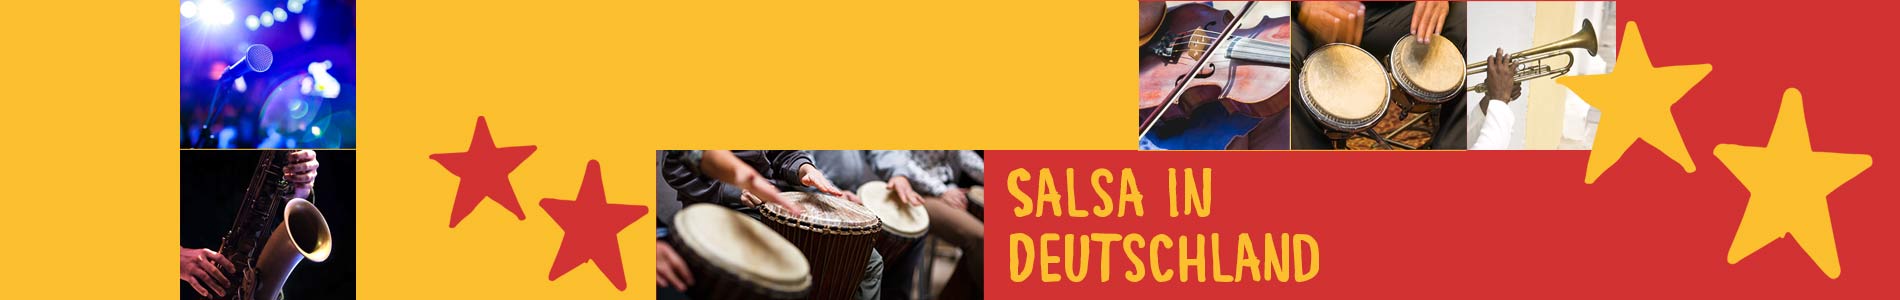 Salsa in Breuna – Salsa lernen und tanzen, Tanzkurse, Partys, Veranstaltungen